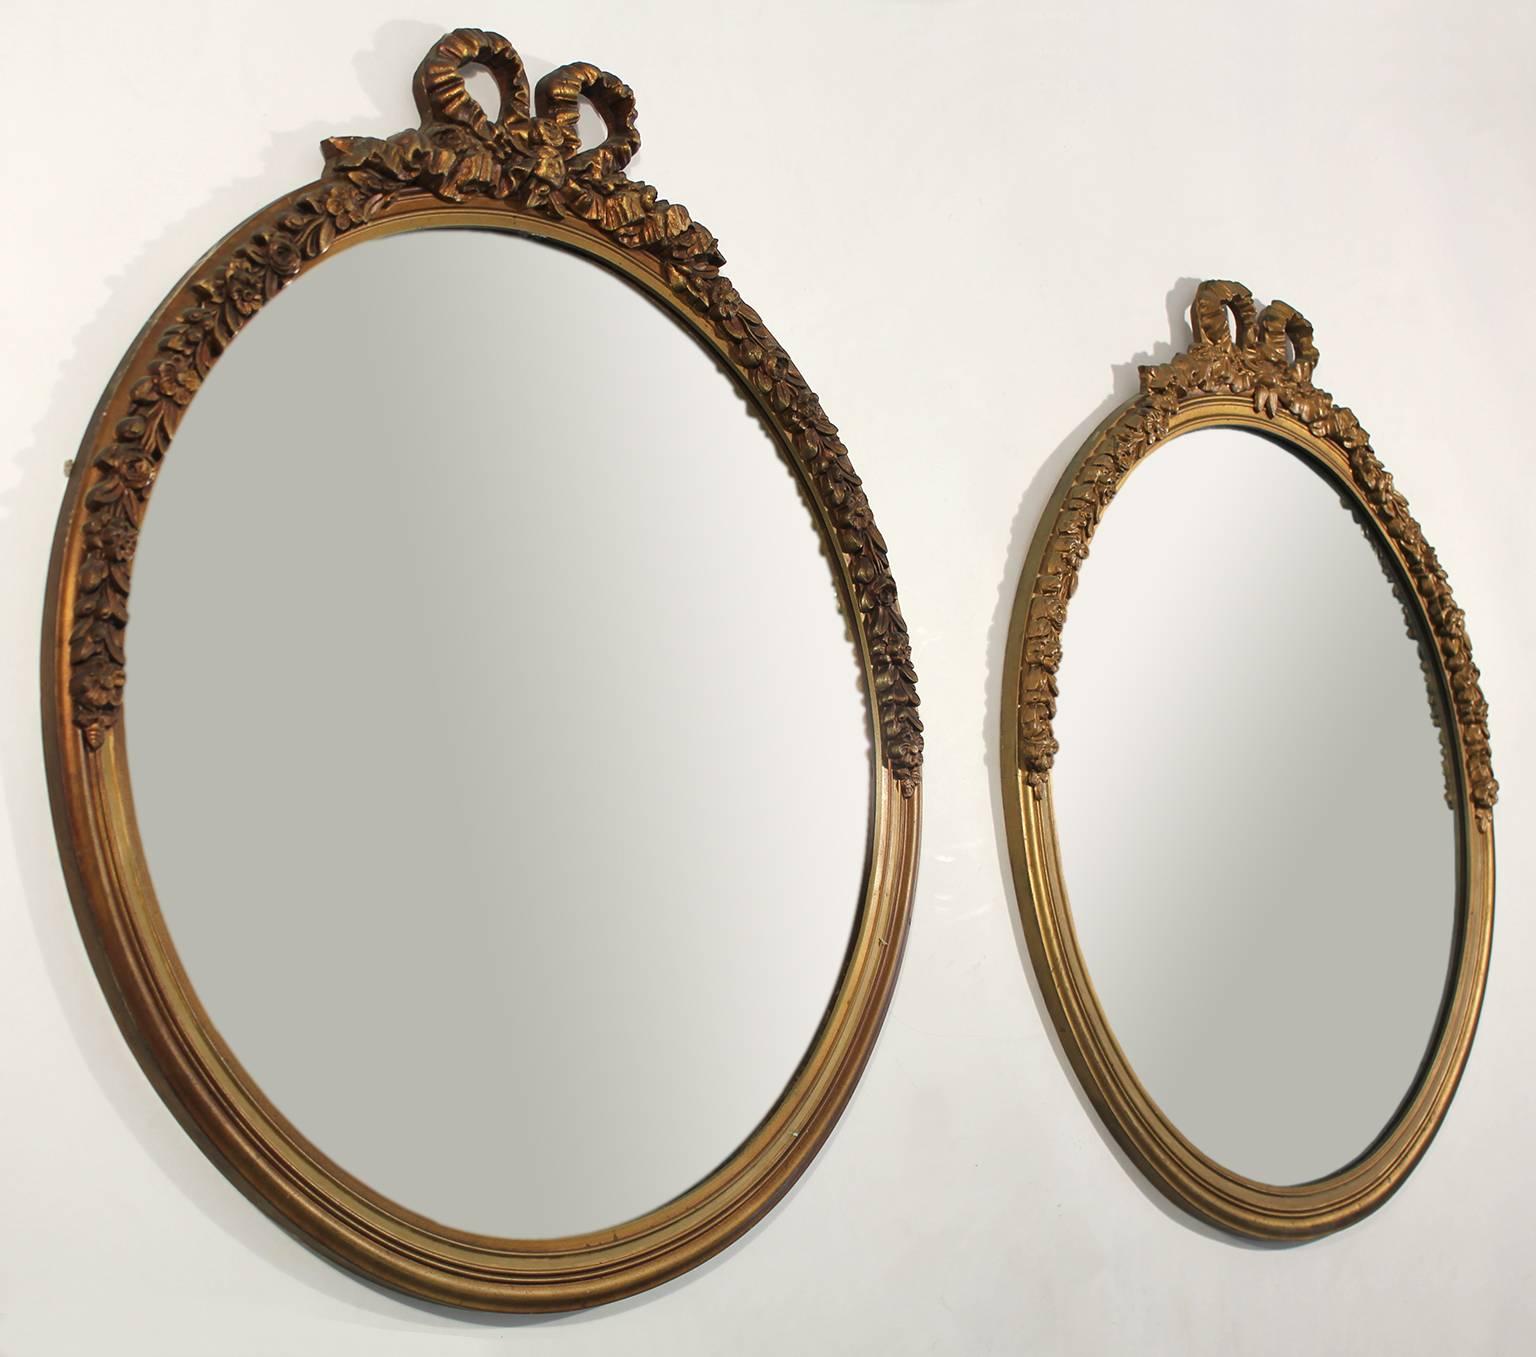 Superbe paire de miroirs anciens en bois sculpté, peints en or et dorés. Magnifiques décorations en forme de ruban et d'arc faites en plâtre sur du bois. A les miroirs d'origine. Dans le style du baroque français. Ils sont 100% originaux et en très